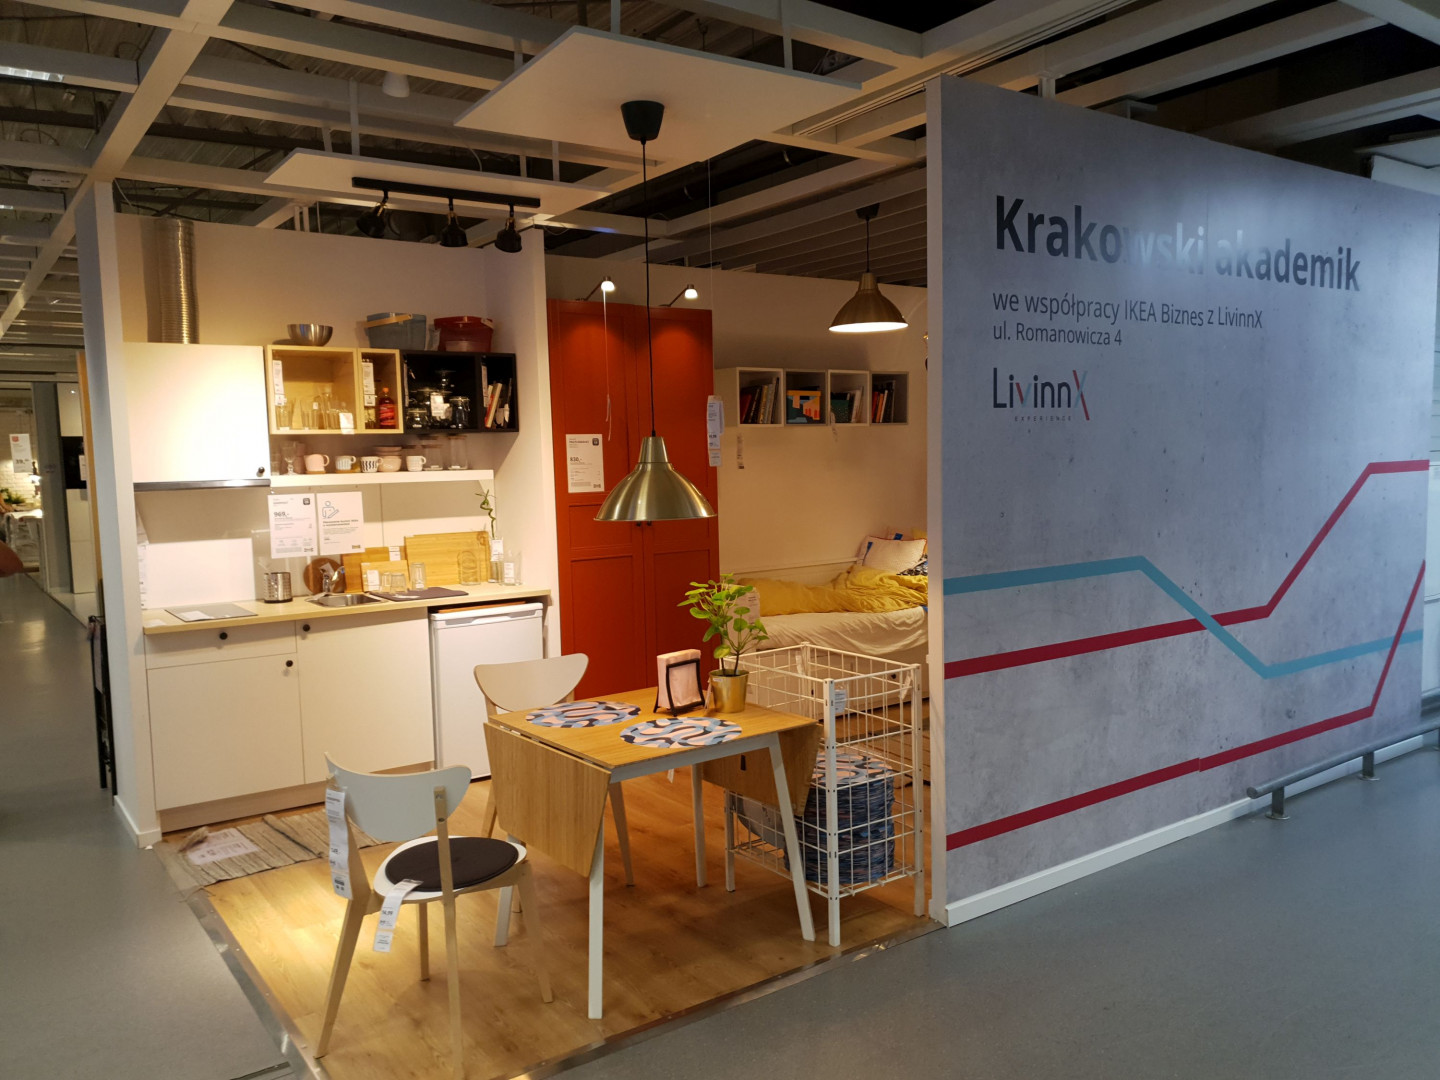 Tak będzie wyglądał akademik LivinnX w Krakowie. Fot. IKEA